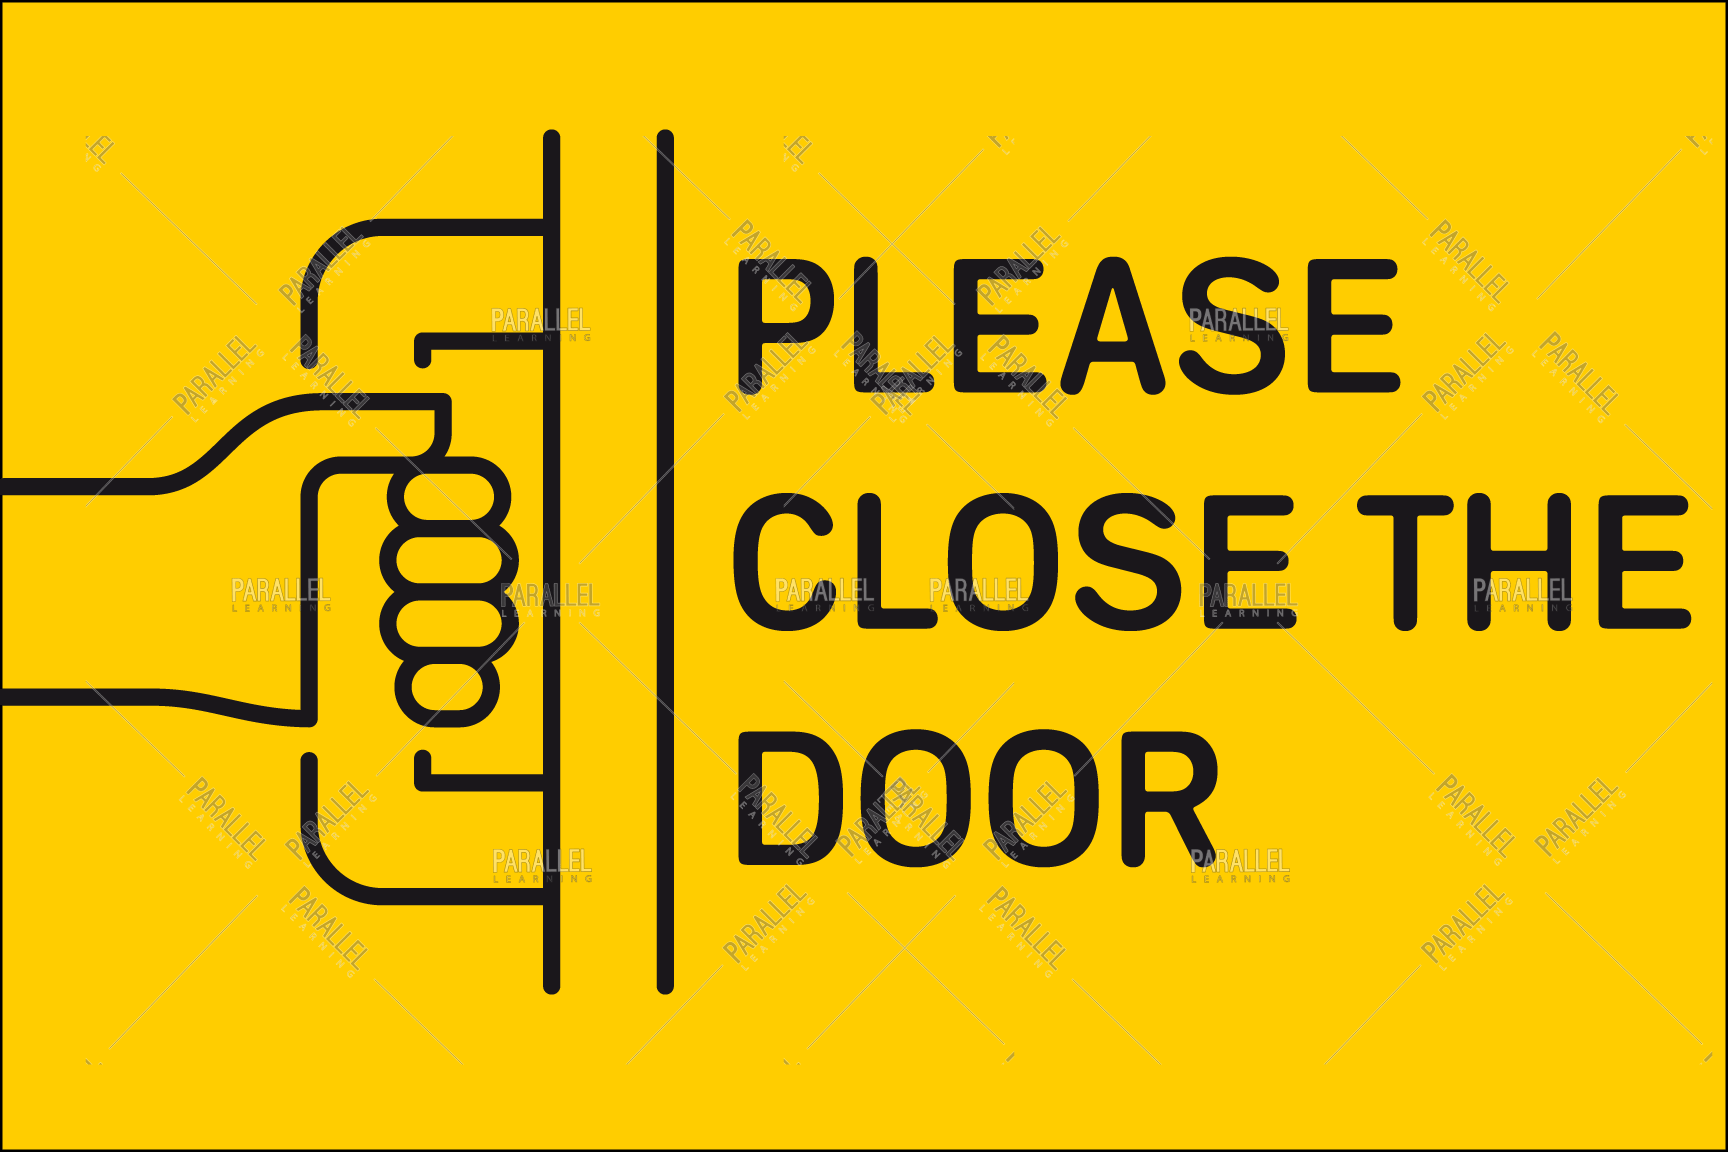 Please Close The Door signage